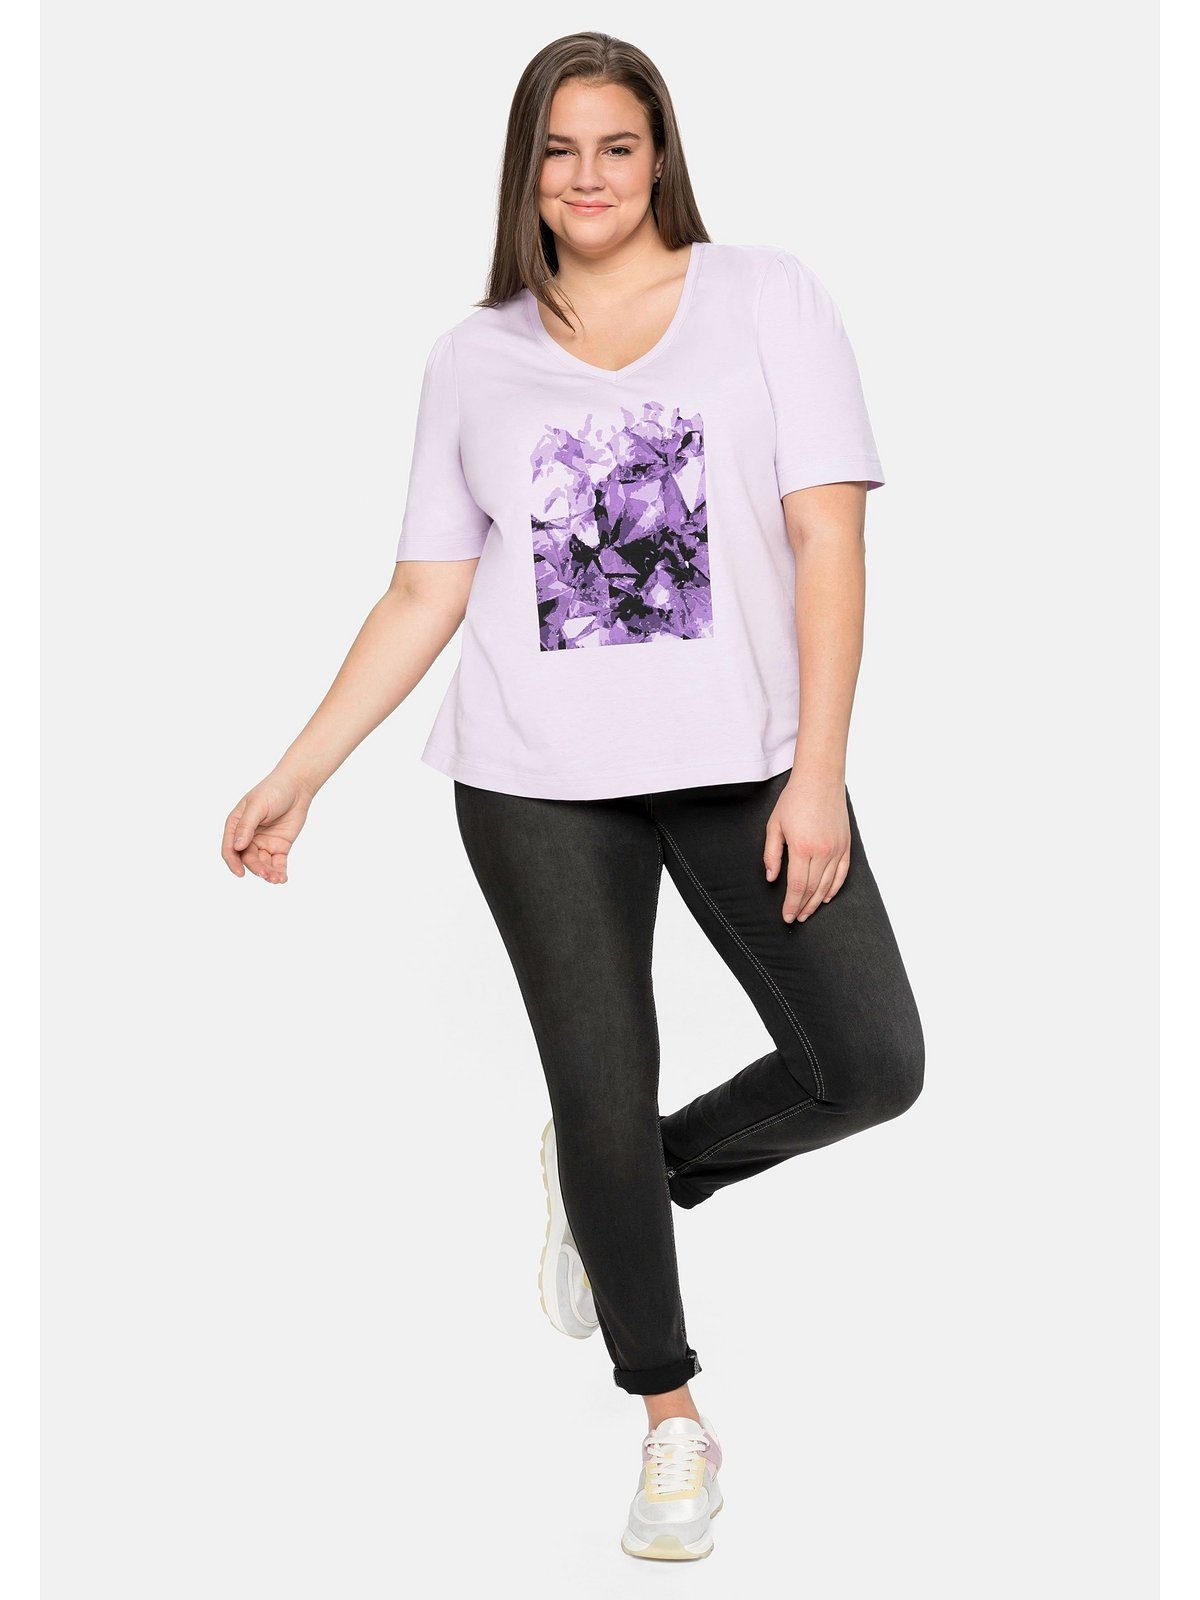 Frontdruck lavendel aus T-Shirt Größen Große Baumwolle mit Sheego